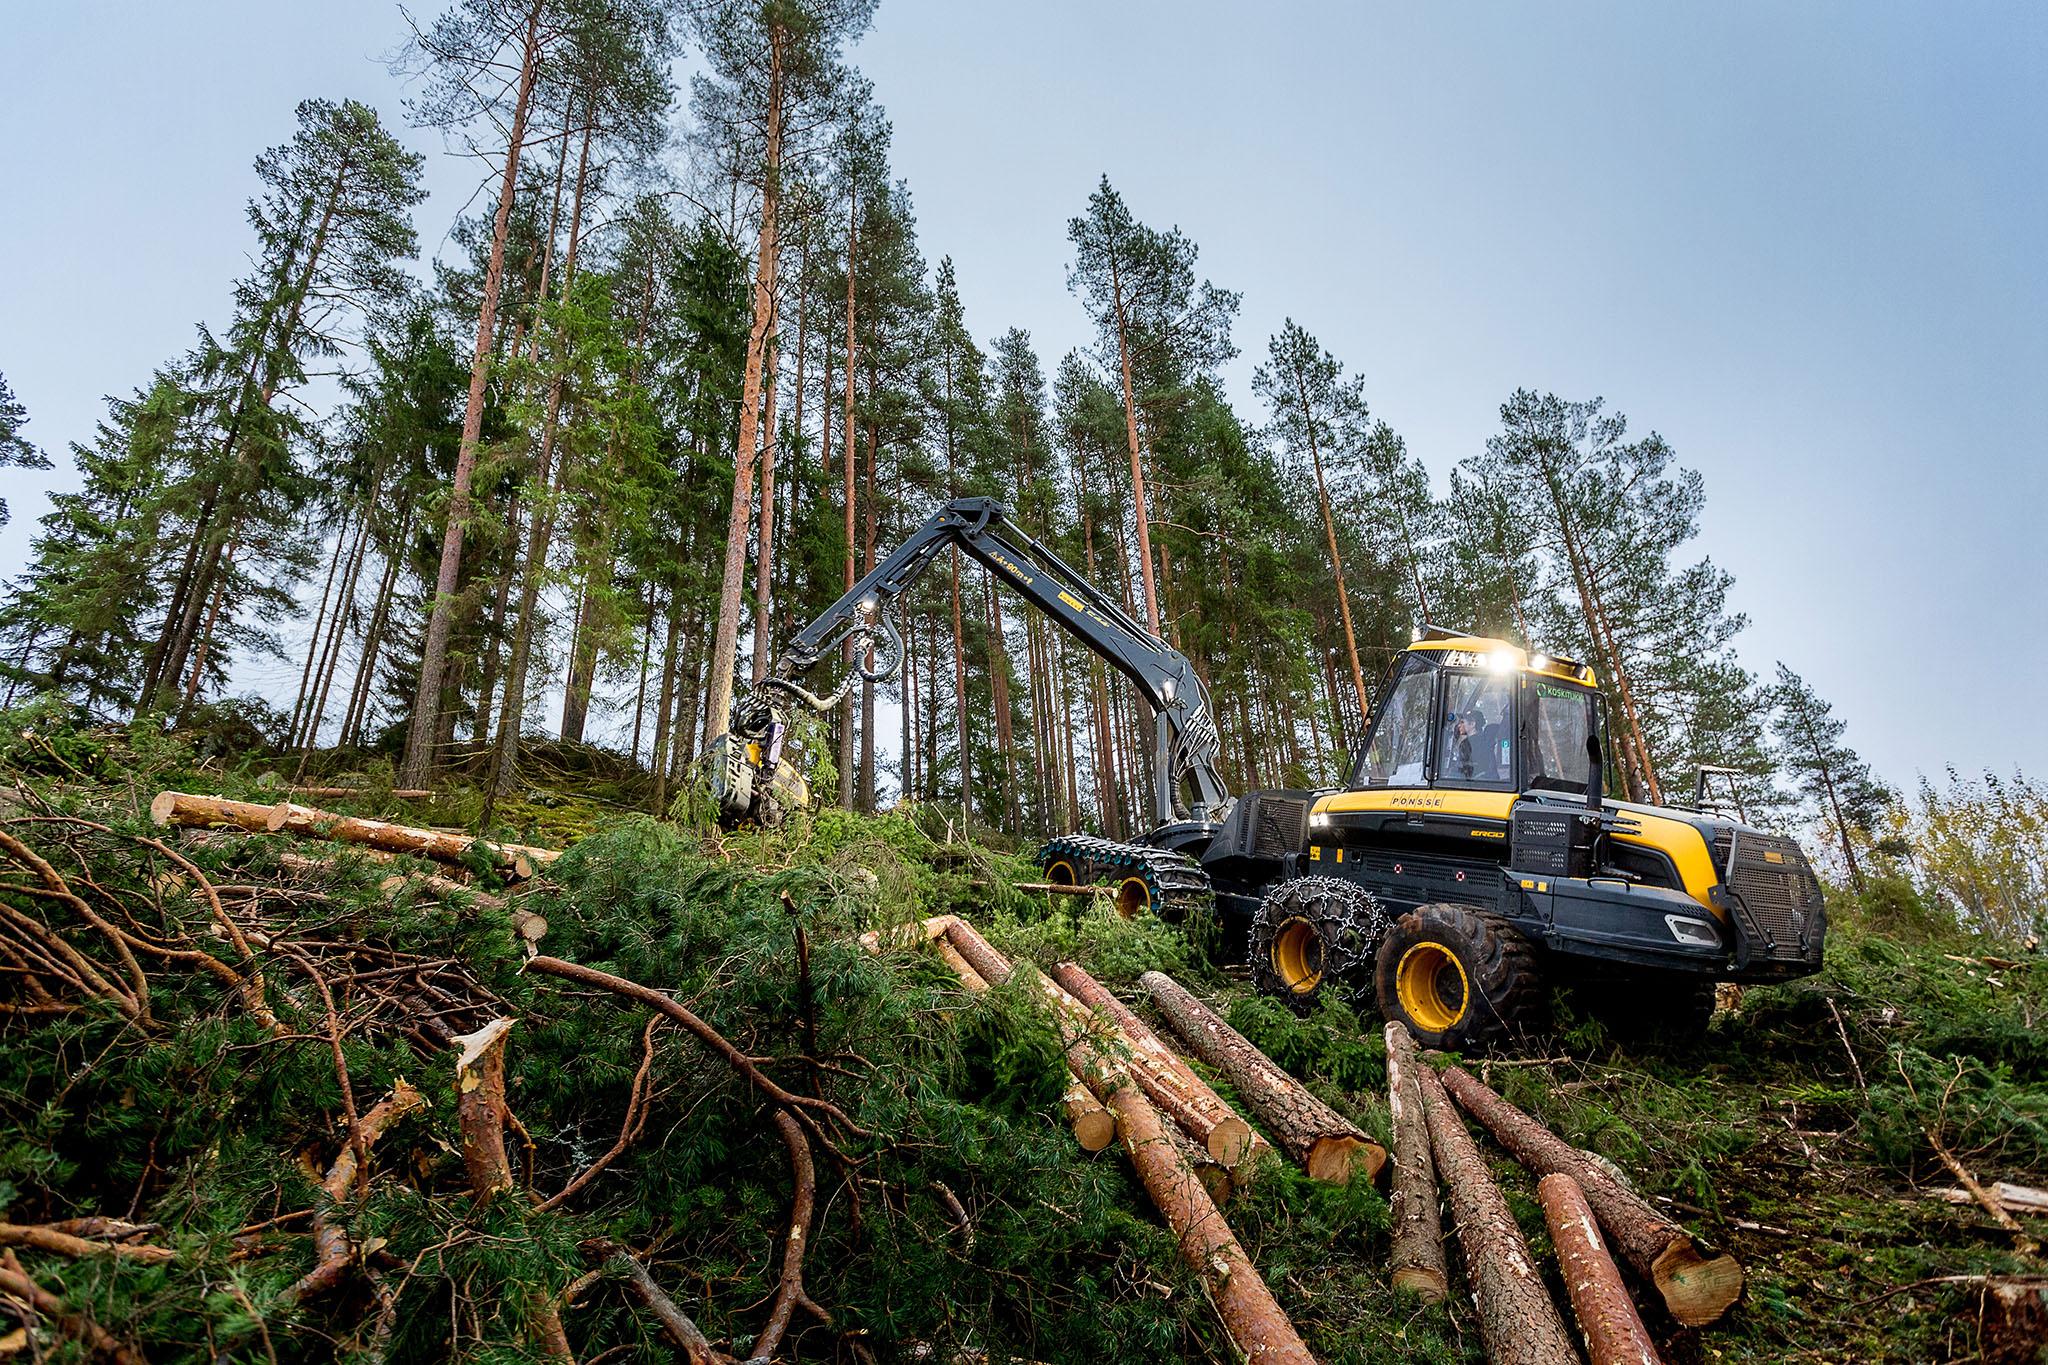 Koskisen puunhankinta, luotettava kumppanisi puukauppaan, merkittävimmät puutavaralajit havu- ja koivutukki